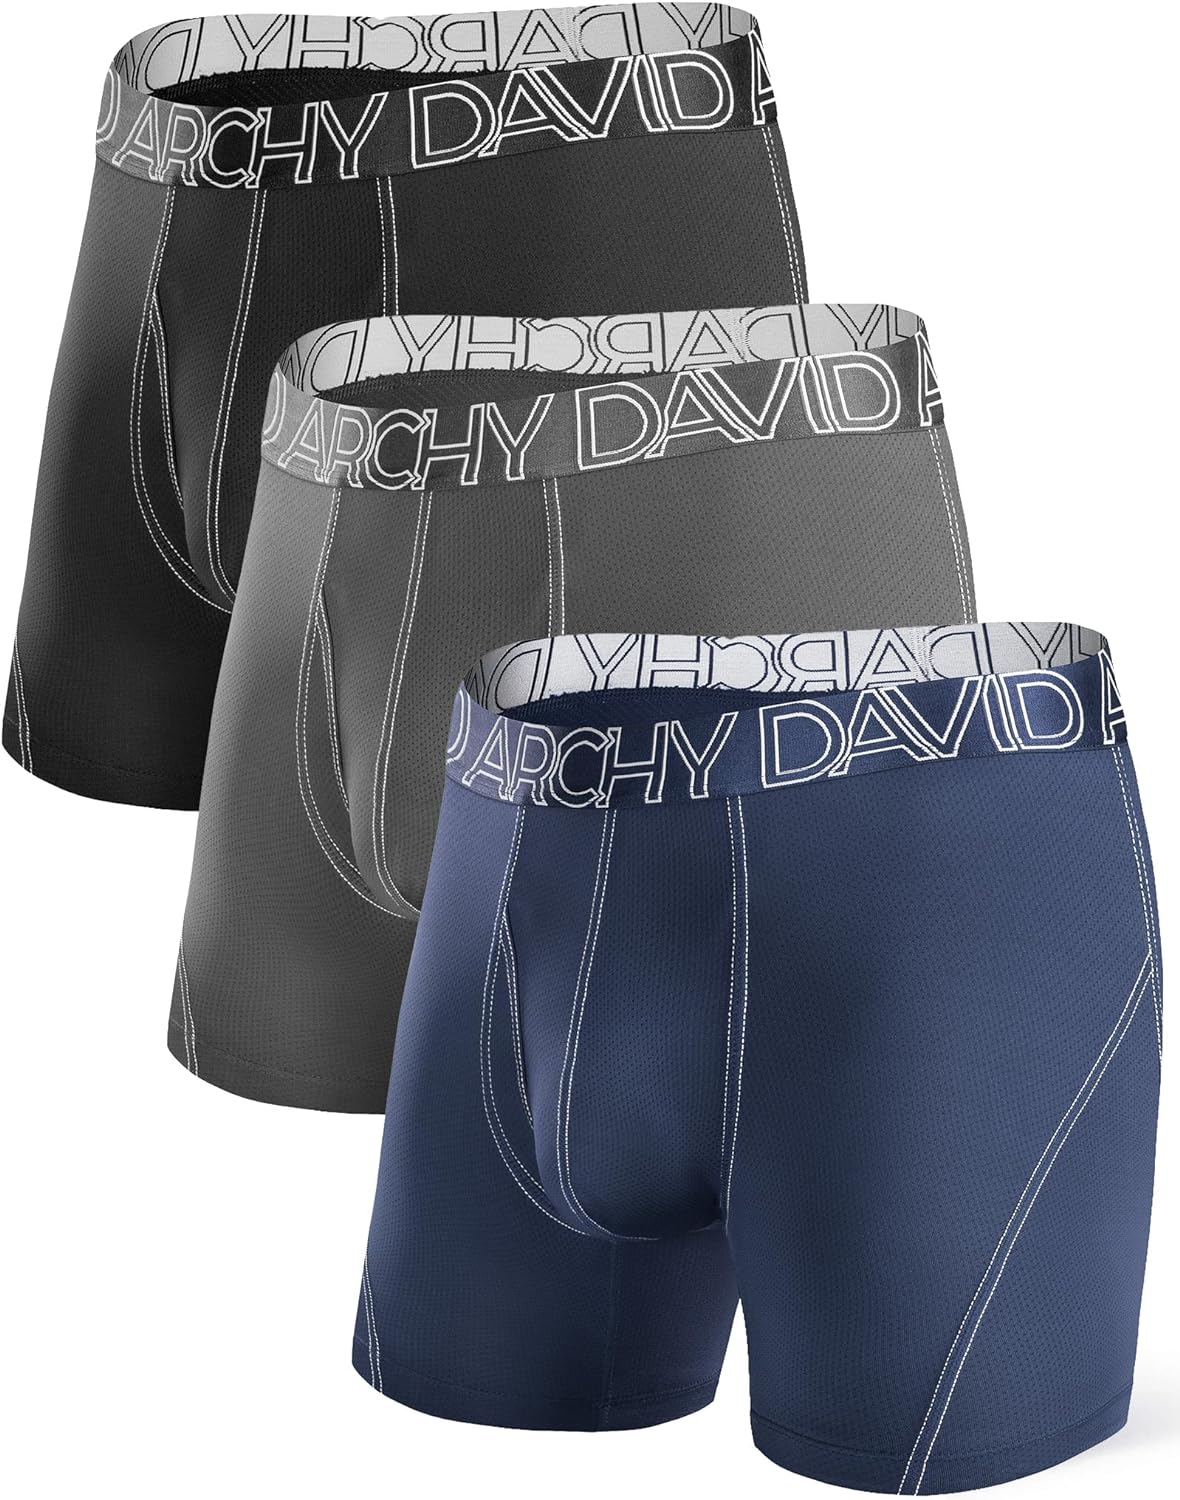 DAVID ARCHY Mens Underwear Mesh Quick Dry Polyamide Boxer Briefs